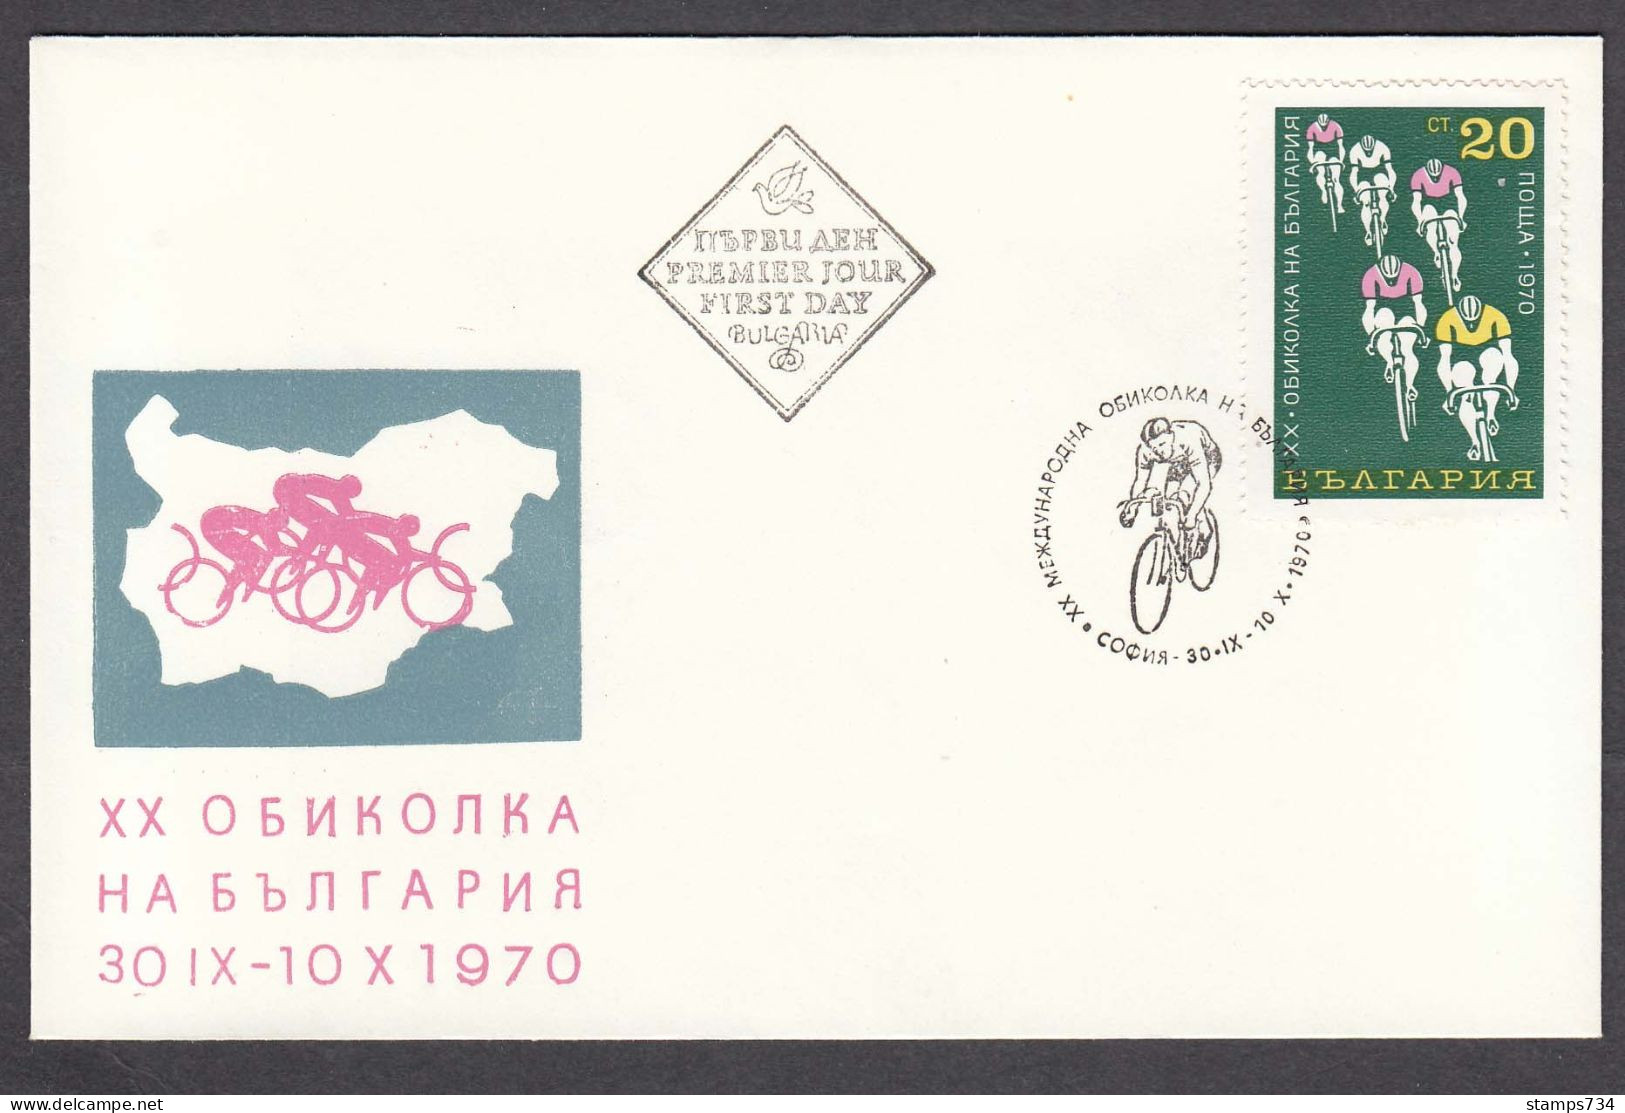 Bulgaria 1970 -20th Tour Of Bulgaria, Mi-Nr. 2036, FDC - FDC